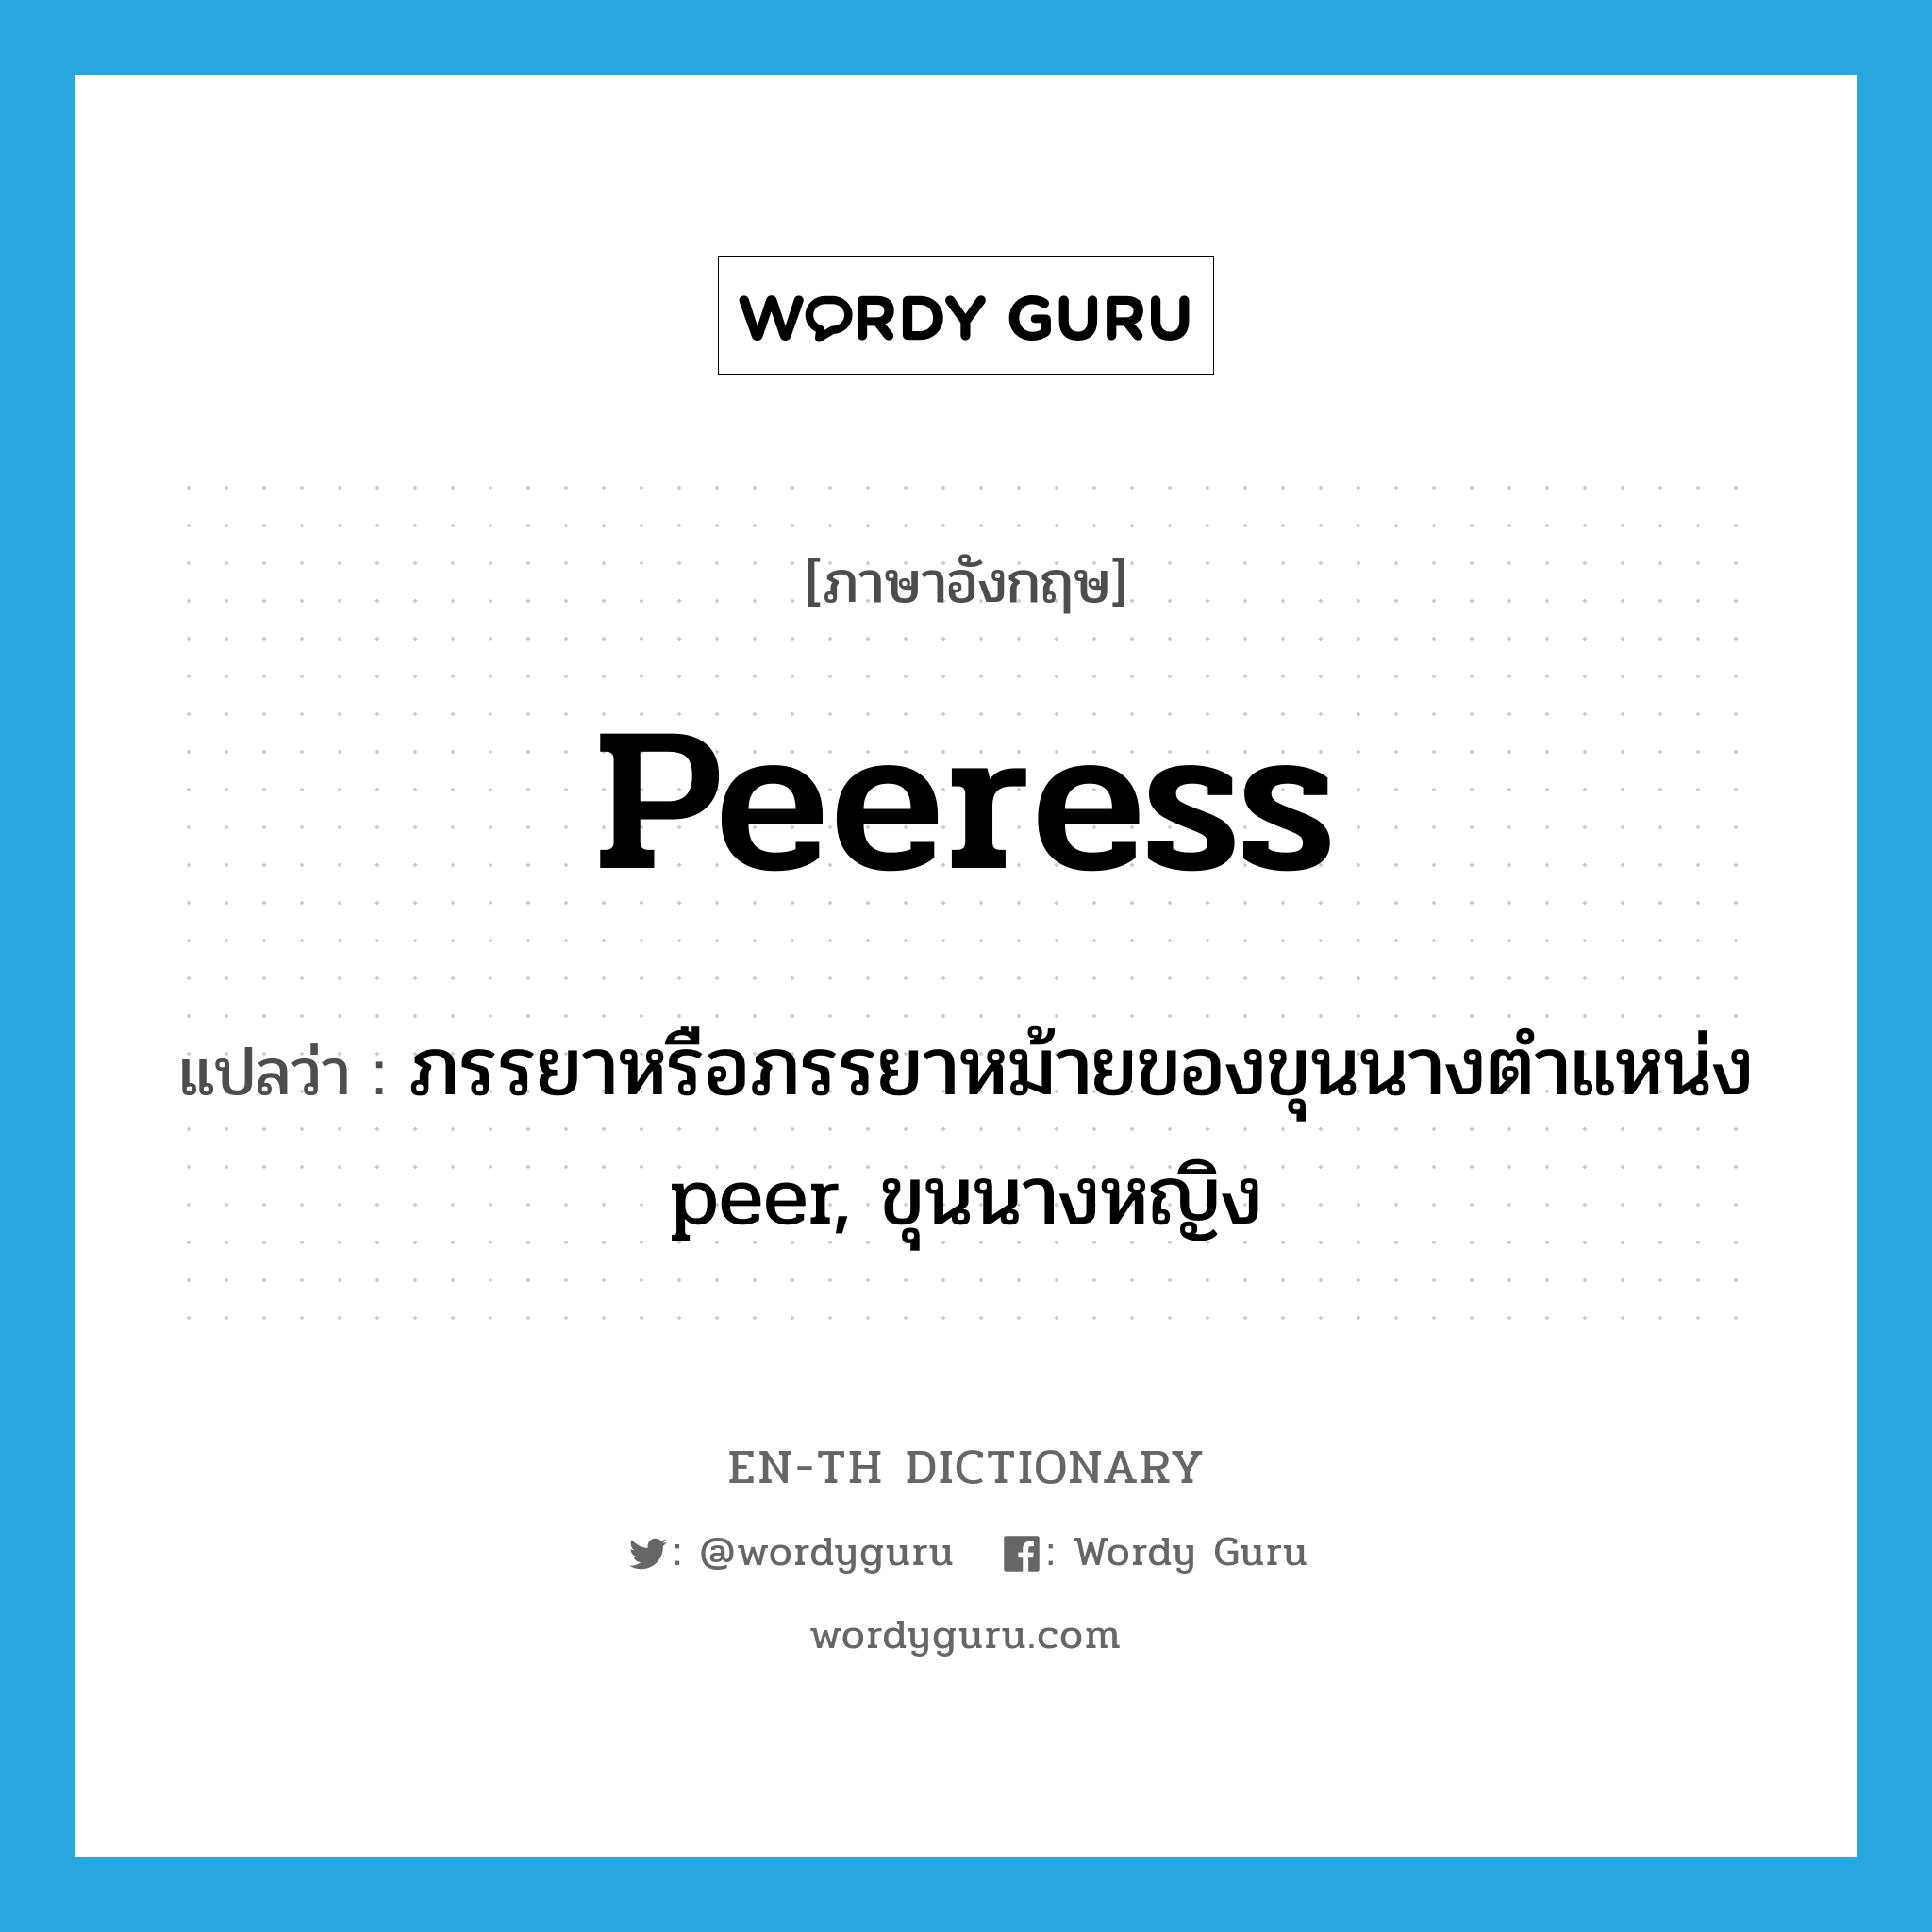 peeress แปลว่า?, คำศัพท์ภาษาอังกฤษ peeress แปลว่า ภรรยาหรือภรรยาหม้ายของขุนนางตำแหน่ง peer, ขุนนางหญิง ประเภท N หมวด N